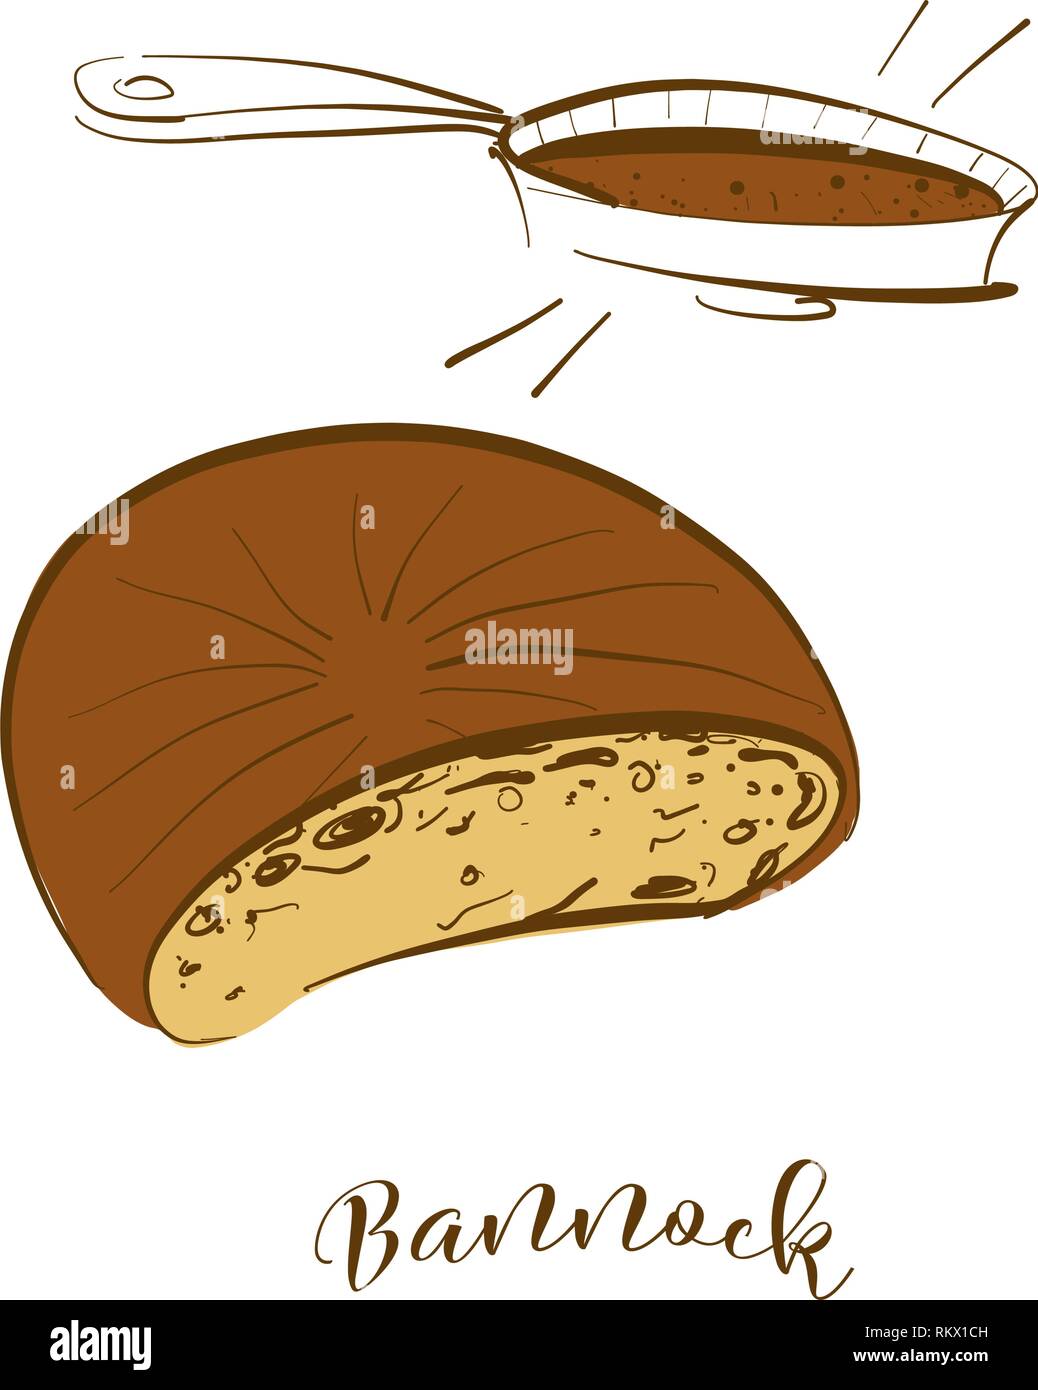 Croquis couleur de pain bannock. De dessin vectoriel, tous faits de nourriture, habituellement connu au Royaume-Uni, Ecosse. Illustration du pain de couleur série. Illustration de Vecteur